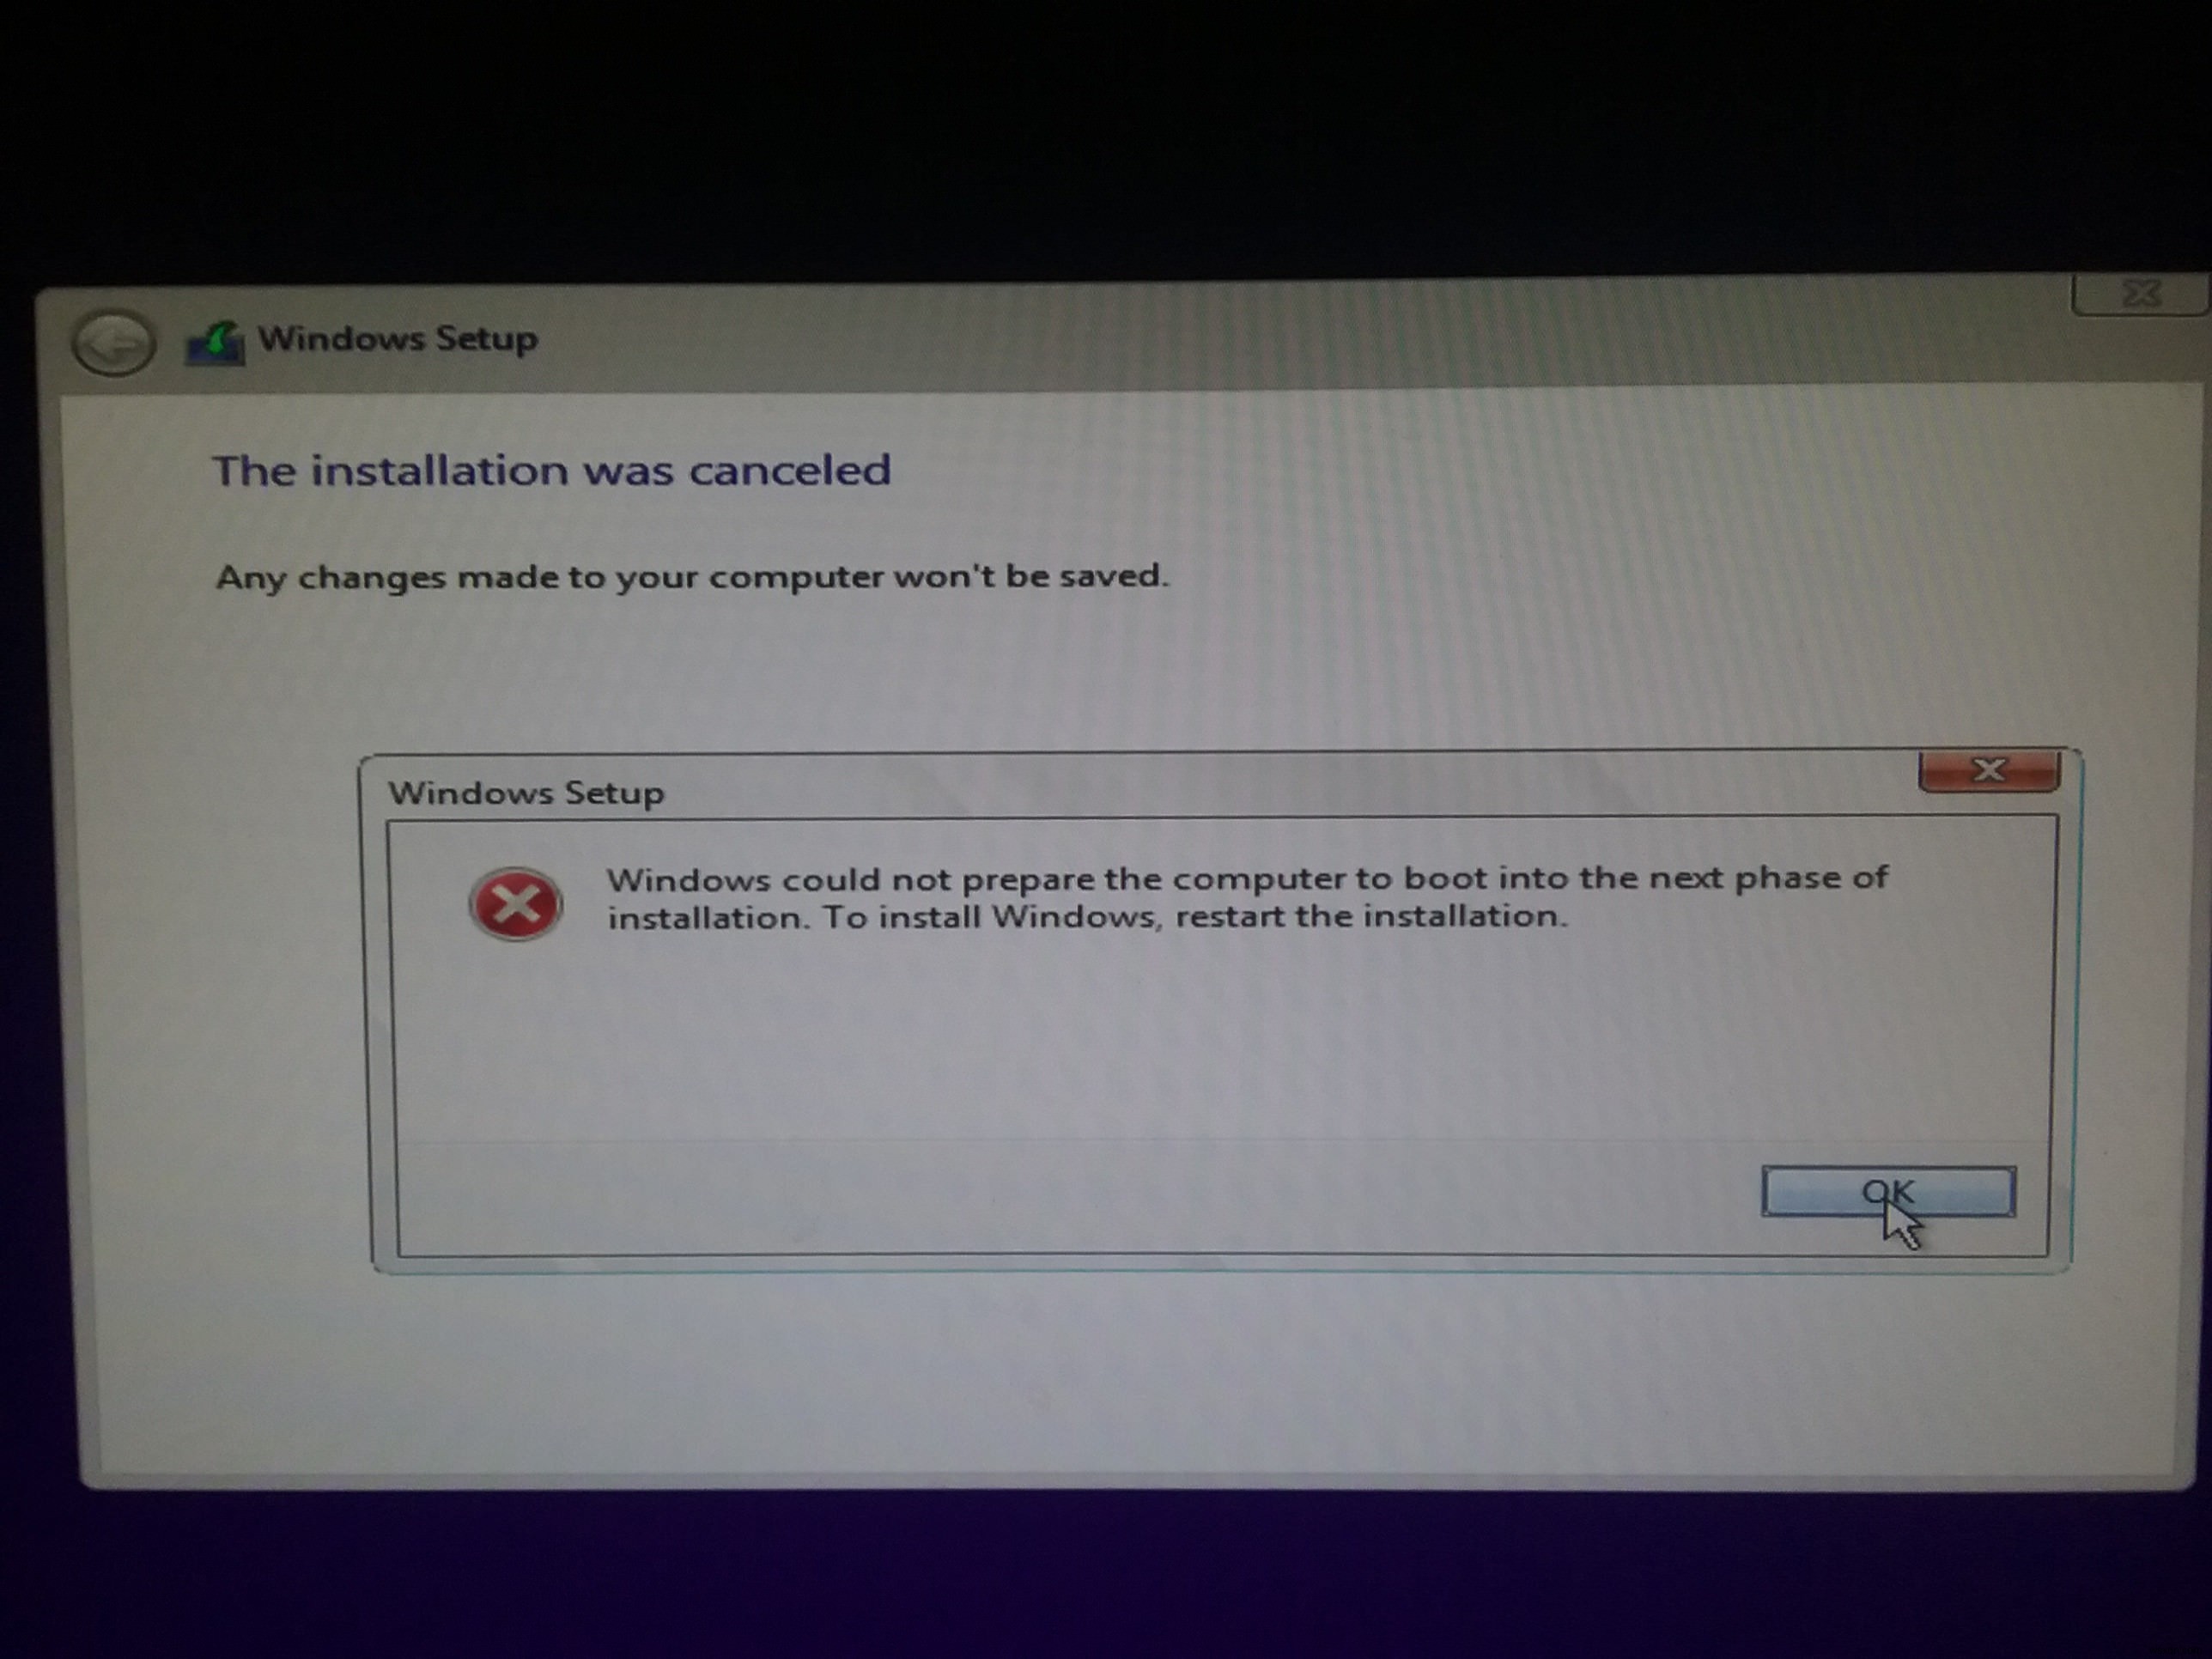 Windows에서 다음 설치 단계로 부팅하기 위해 컴퓨터를 준비할 수 없습니다. 